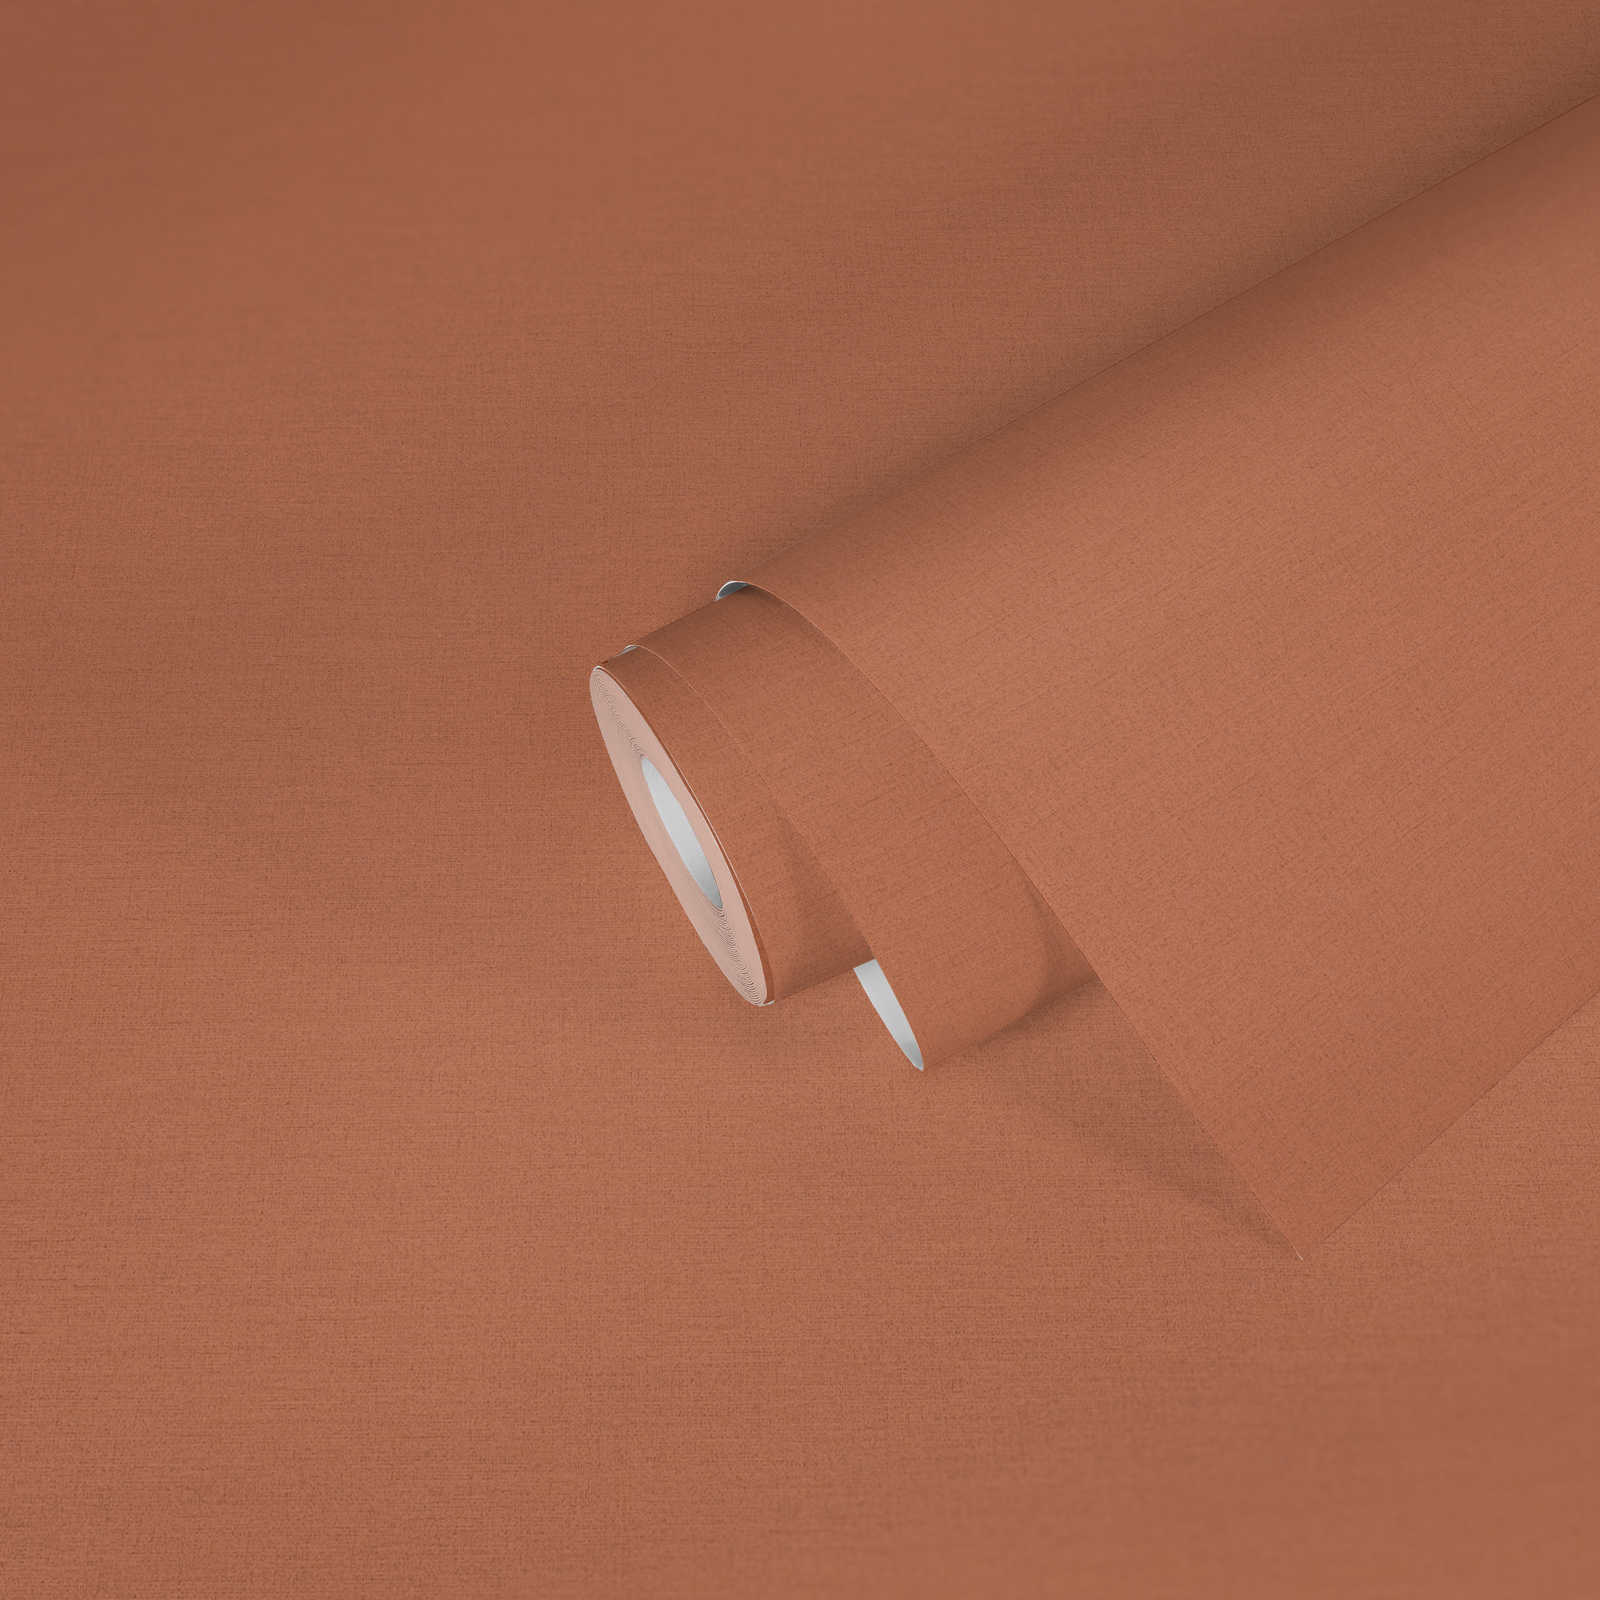             Linen look wallpaper in a subtle style - orange
        